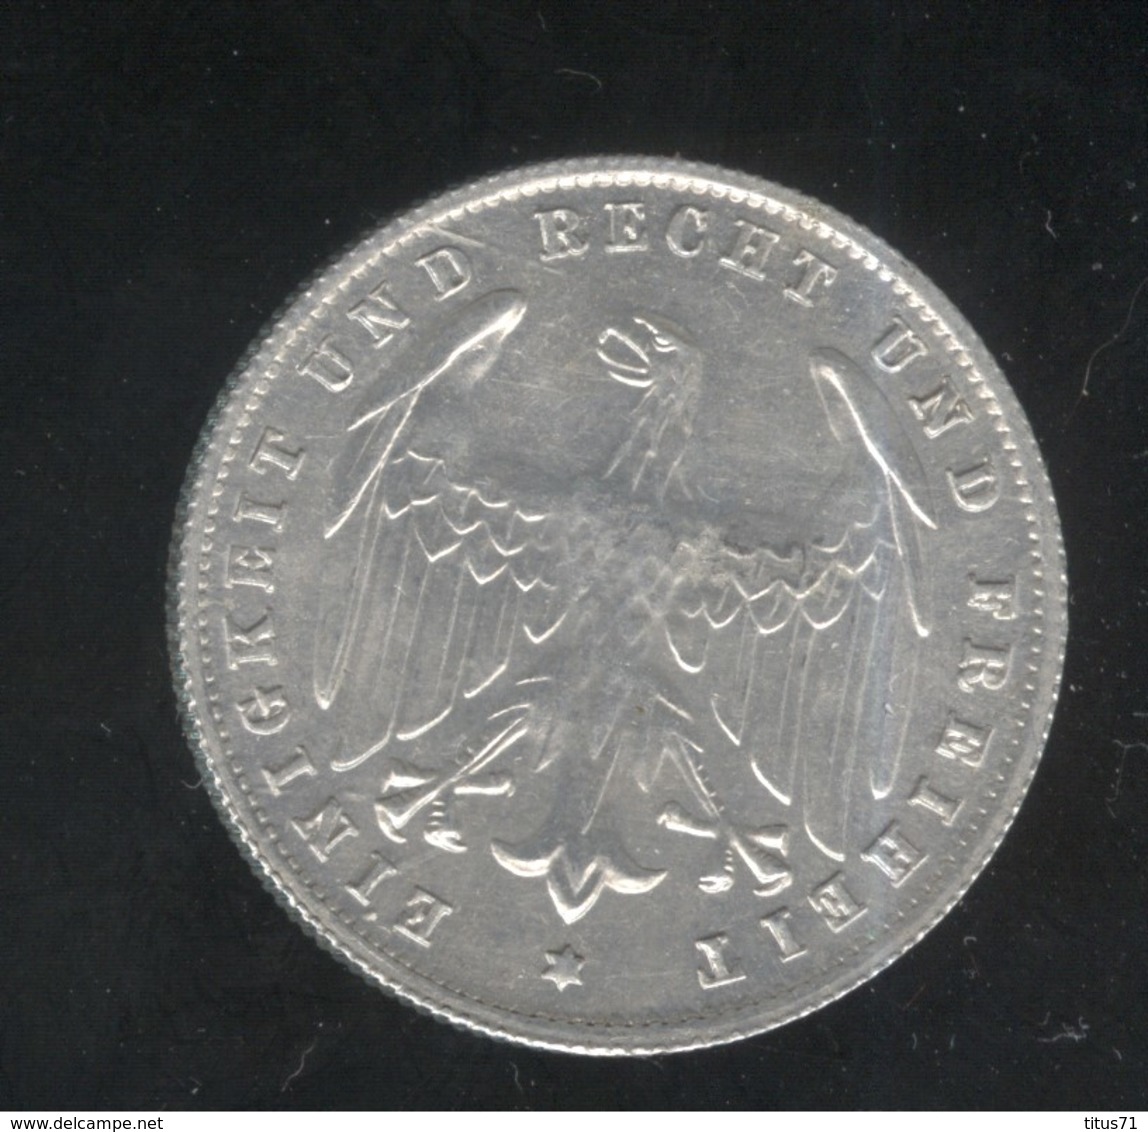 500 Mark Allemagne / Germany 1923 A - TTB++ - 50 Renten- & 50 Reichspfennig